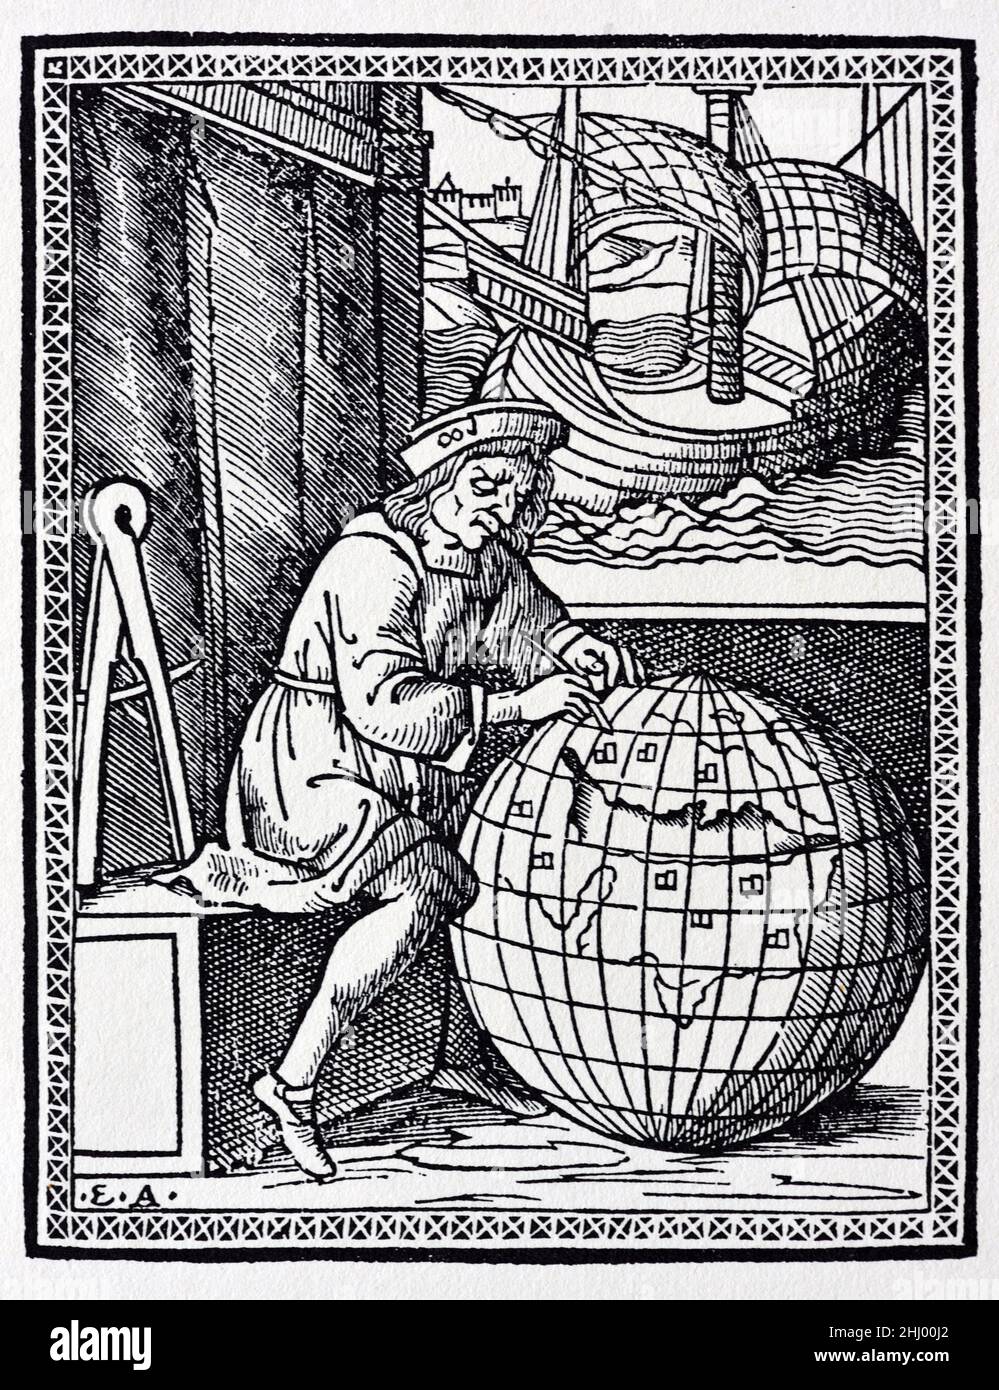 Ludovico de Varthema (c1470-1517), un voyageur italien, planifie ses voyages sur le globe terrestre géant.Ses voyages, Itinerario de Ludouico de Varthema Bolognese, ont été publiés pour la première fois à Rome en 1510.Imprimé, gravure ou illustration de bois d'époque Banque D'Images